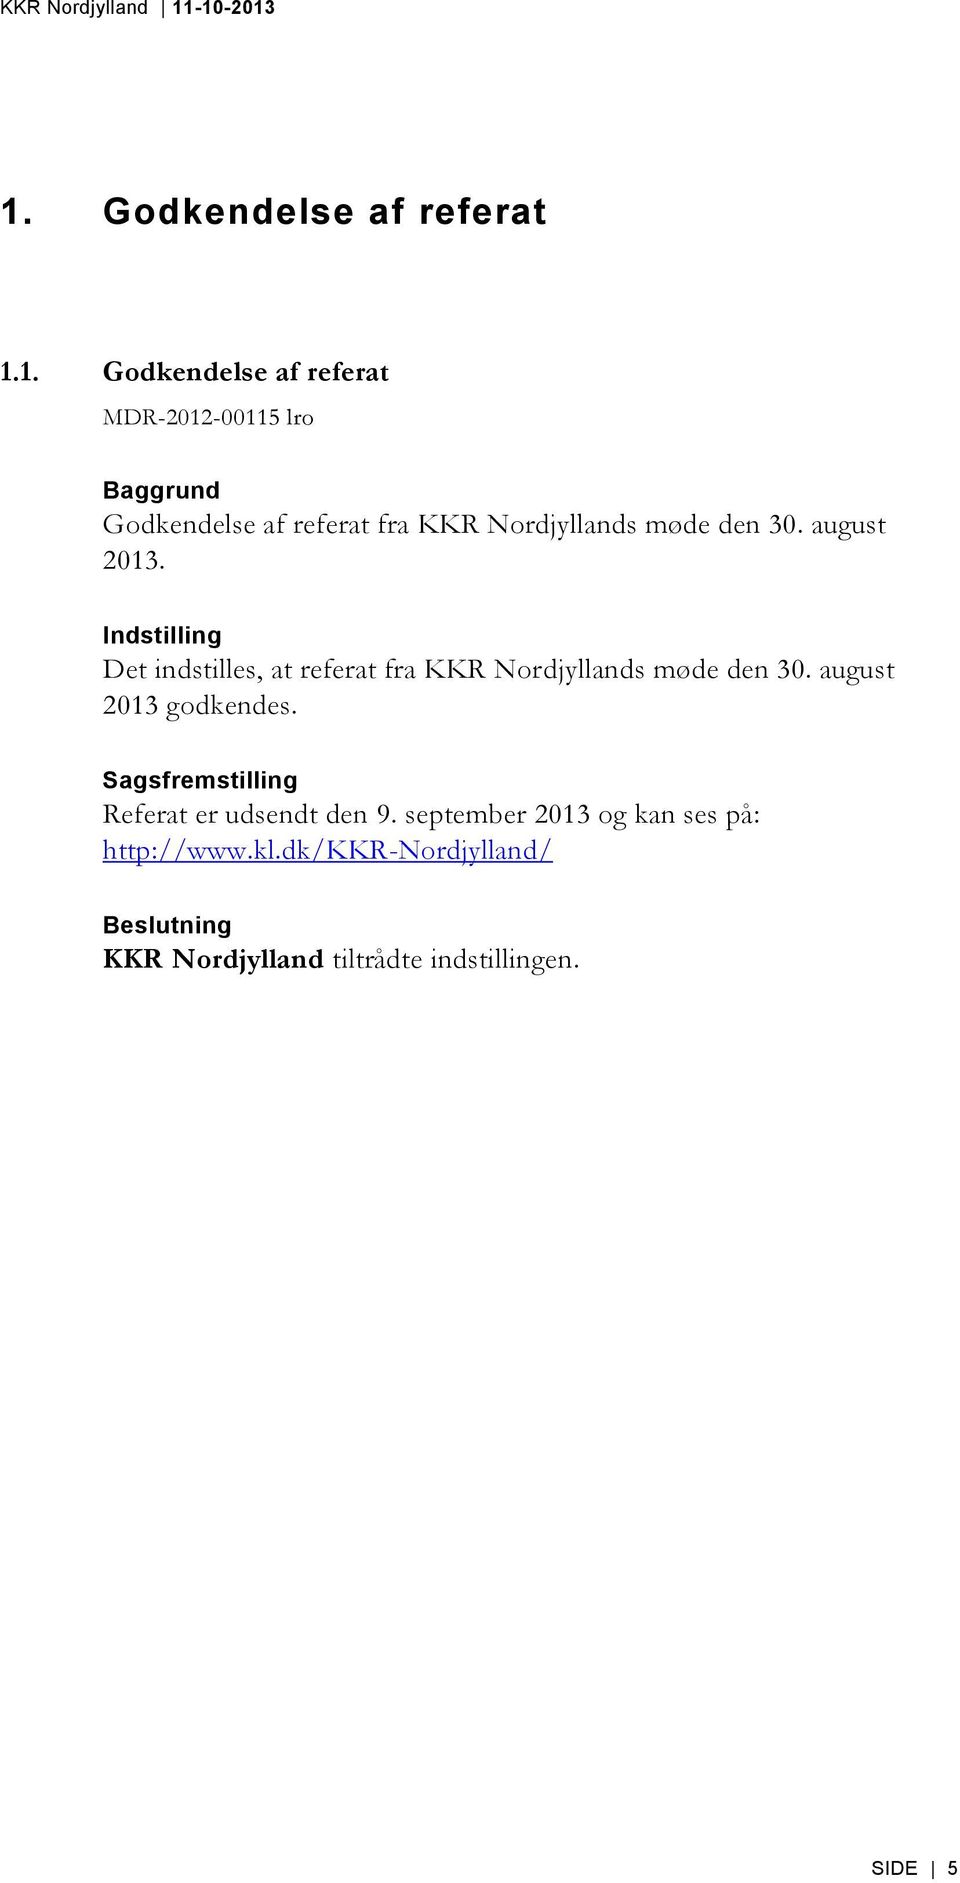 Indstilling Det indstilles, at referat fra KKR Nordjyllands møde den 30. august 2013 godkendes.